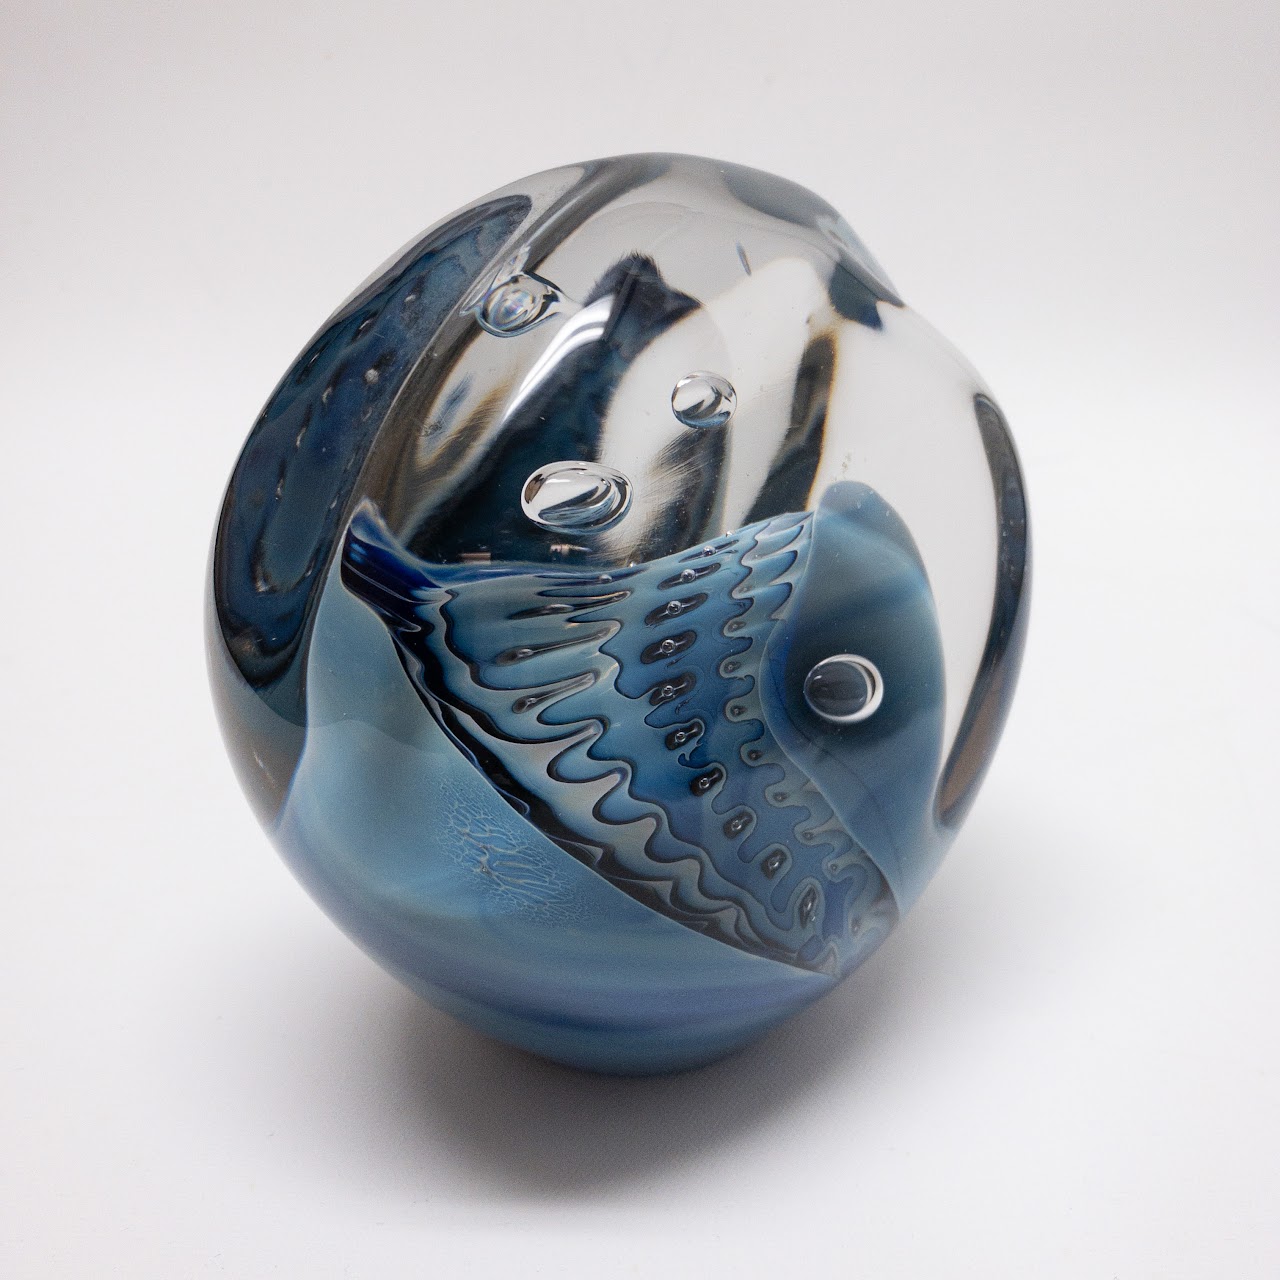 Robert Eickholt Signed Art Glass Sculpture